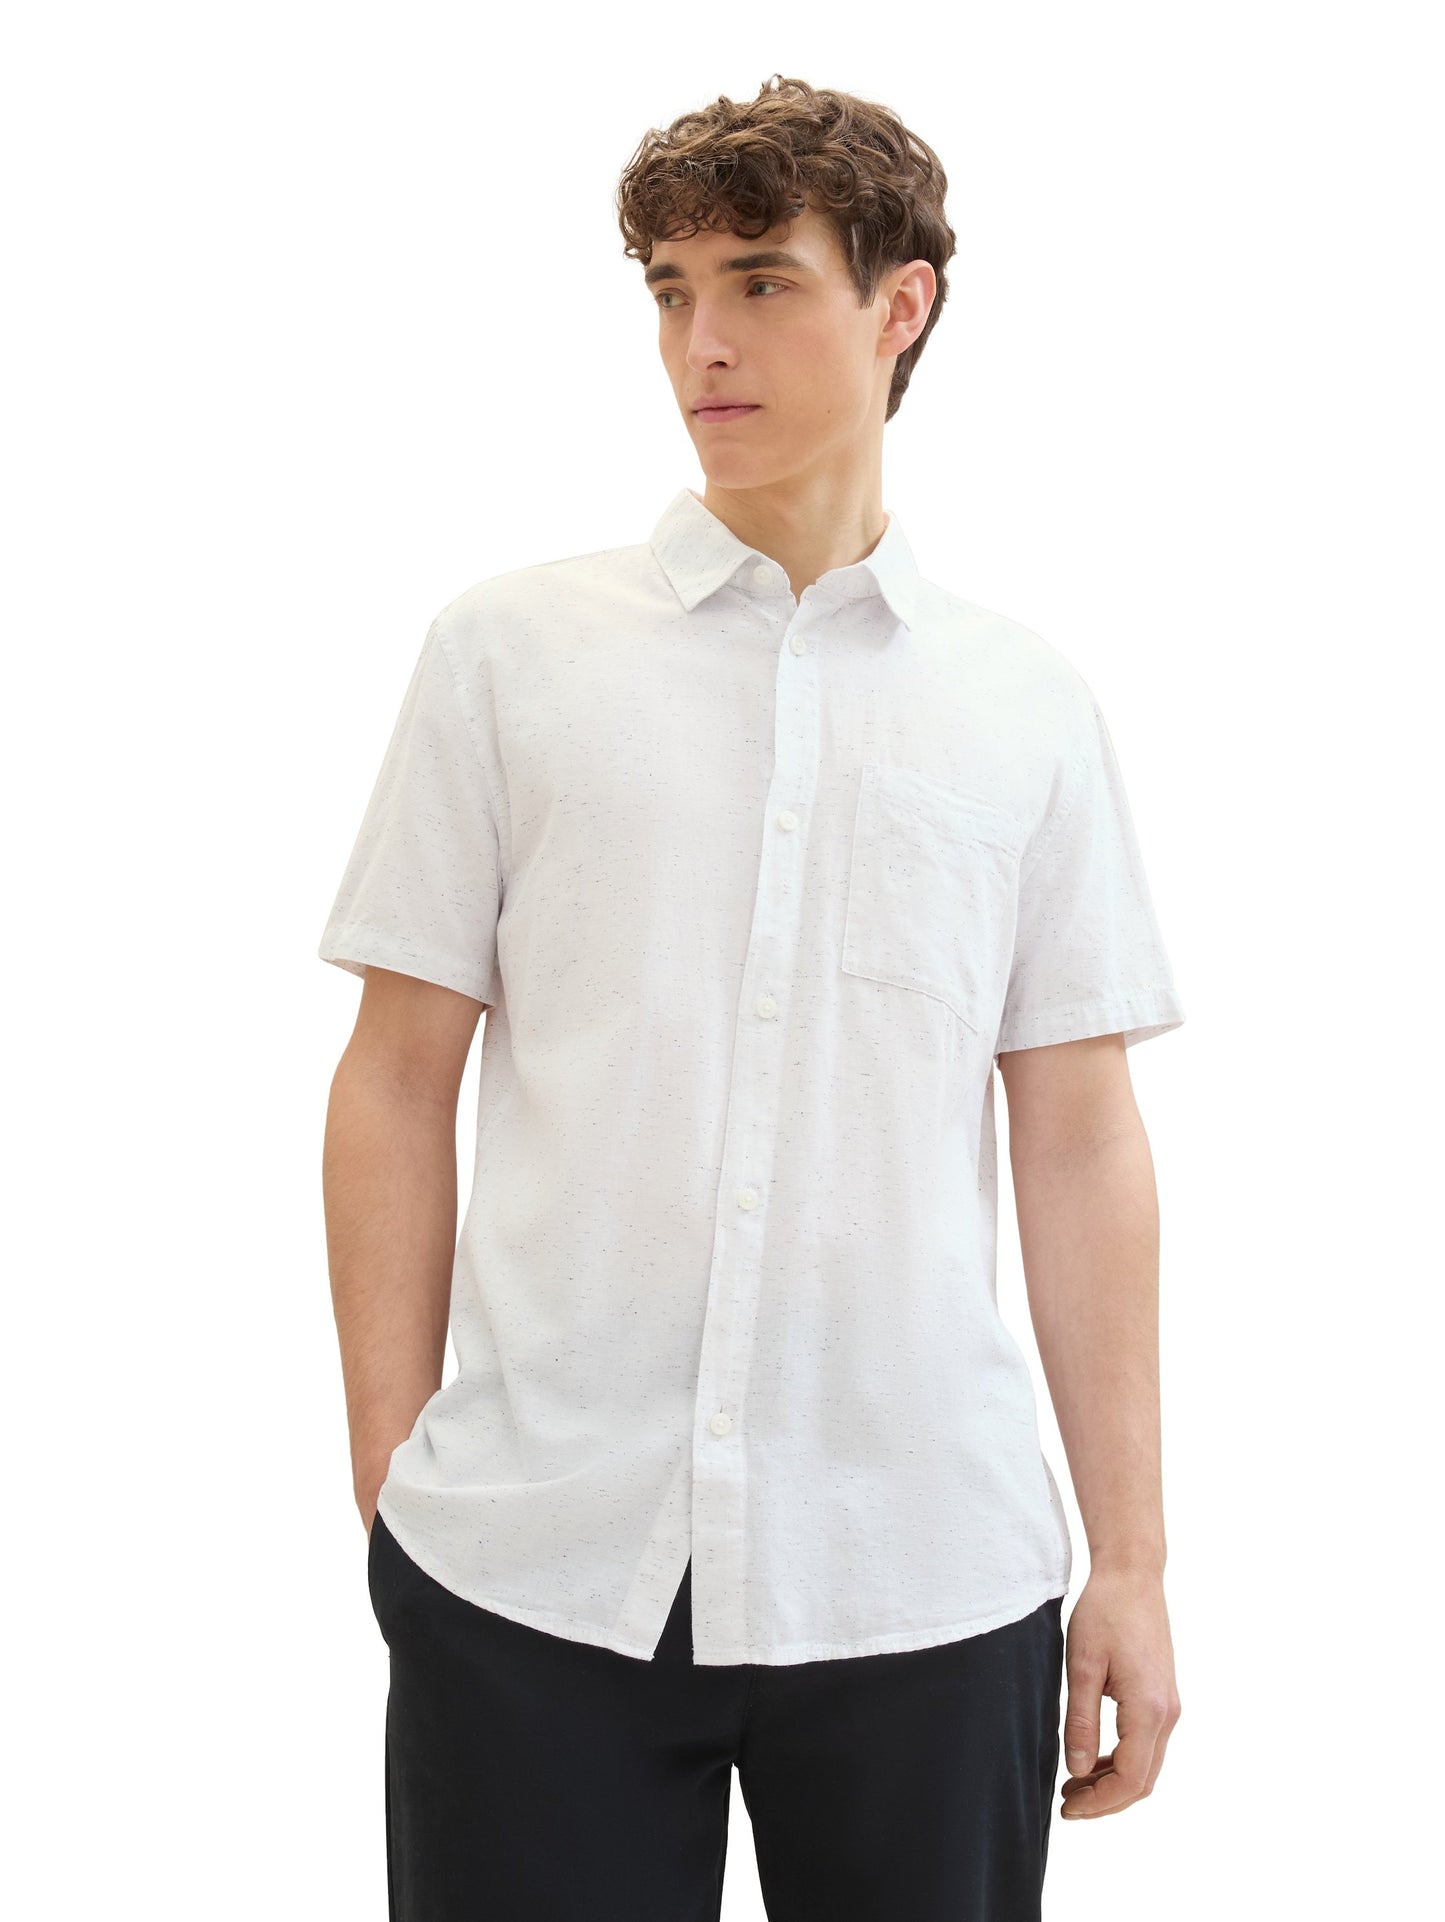 structured shirt (White Herringb)